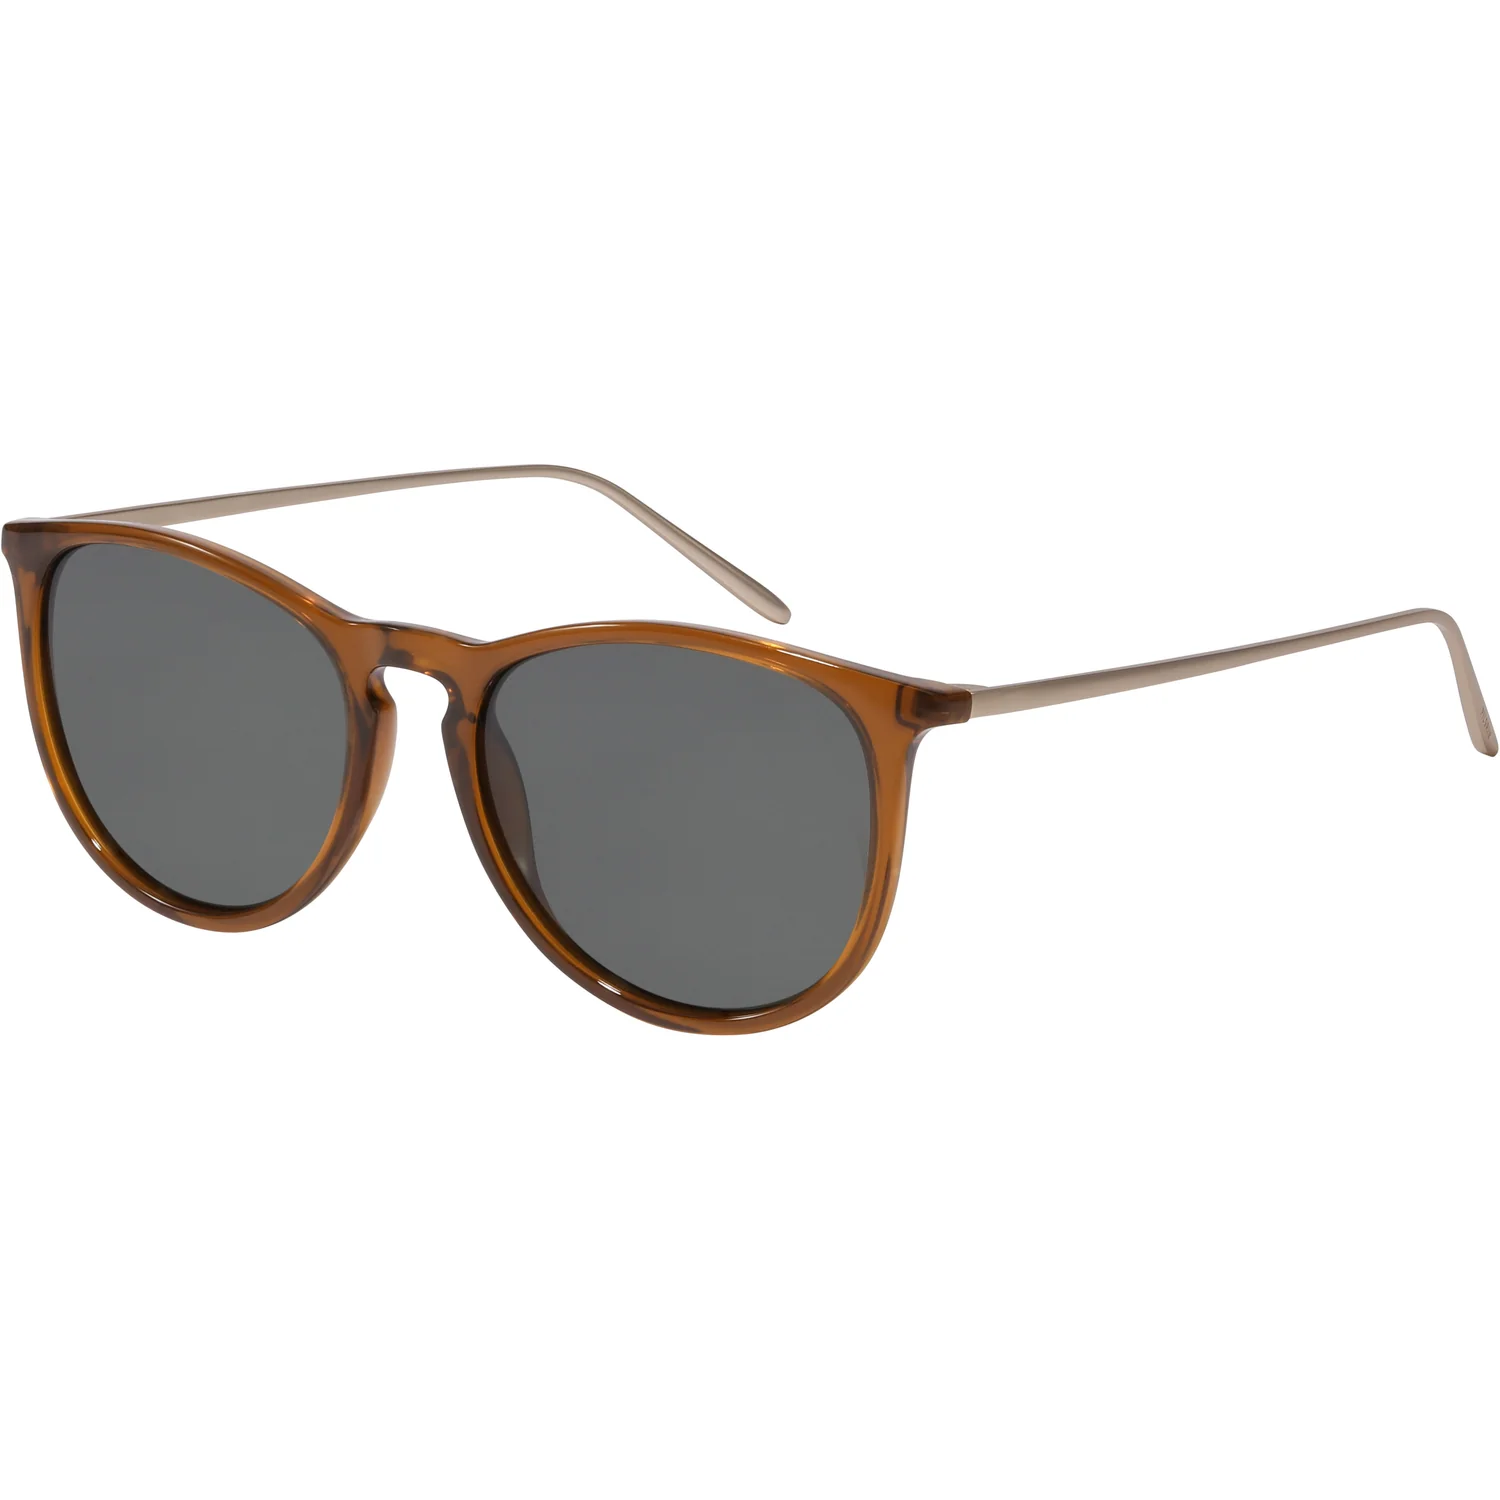 Pilgrim Vanille Sunglasses - Dark Brown/Gold Accessories - Other Accessories - Sunglasses by Pilgrim | Grace the Boutique